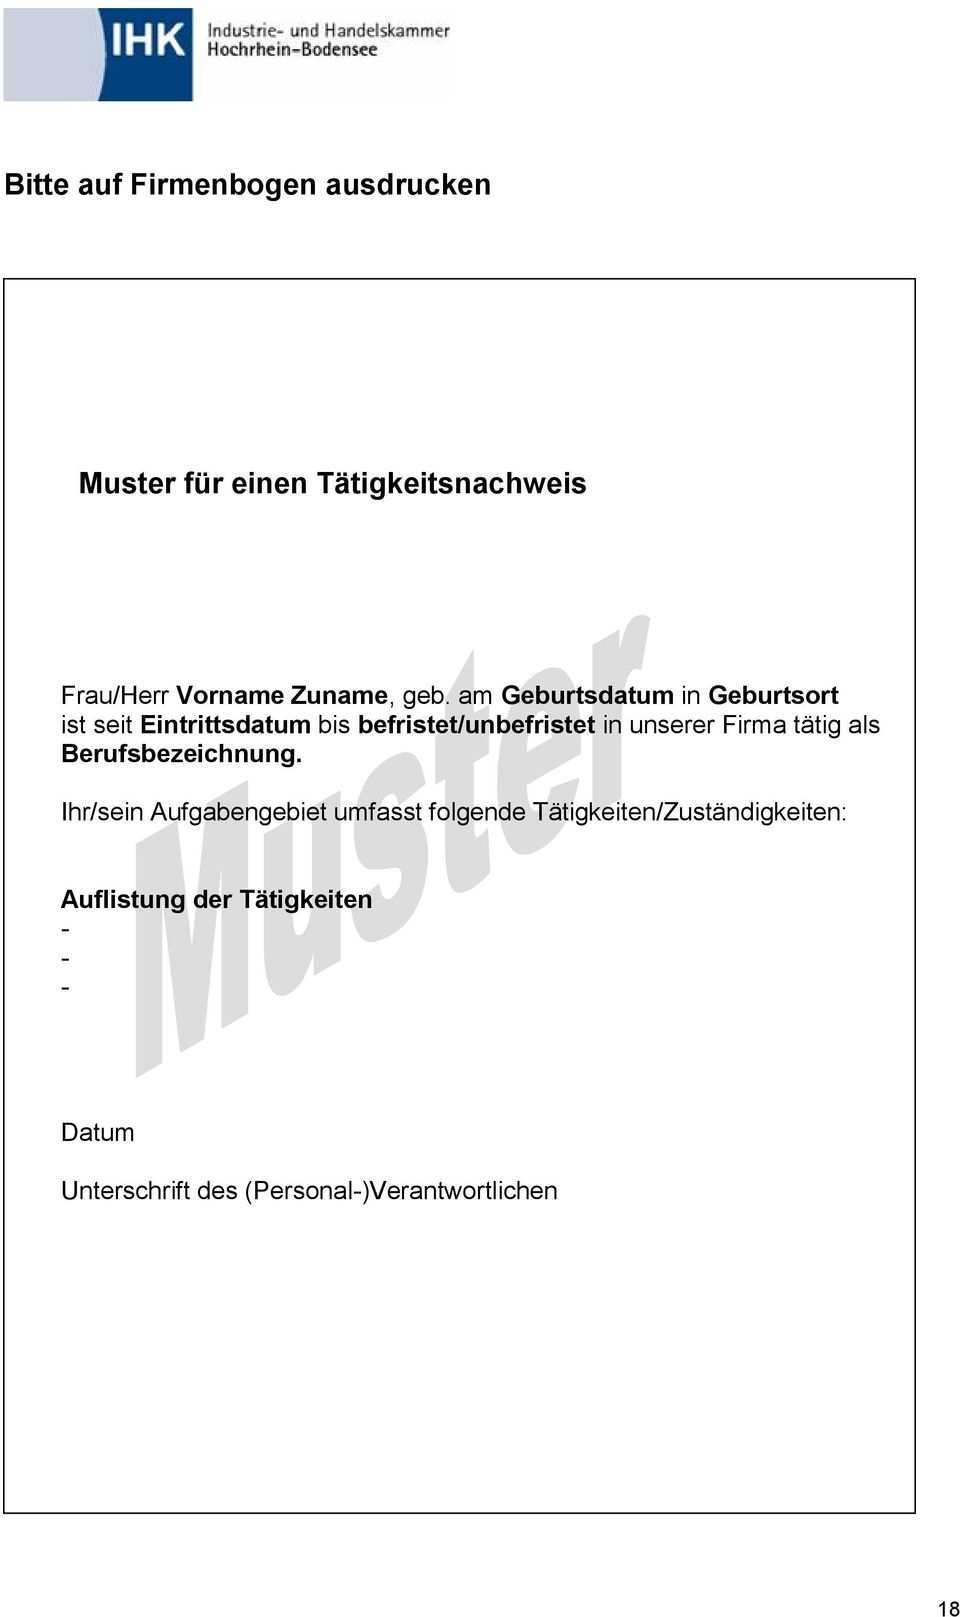 Geprufte R Industriemeister In Metall Entspricht Der Stufe 6 Des Deutschen Qualifikationsrahmens Bachelor Niveau Pdf Free Download